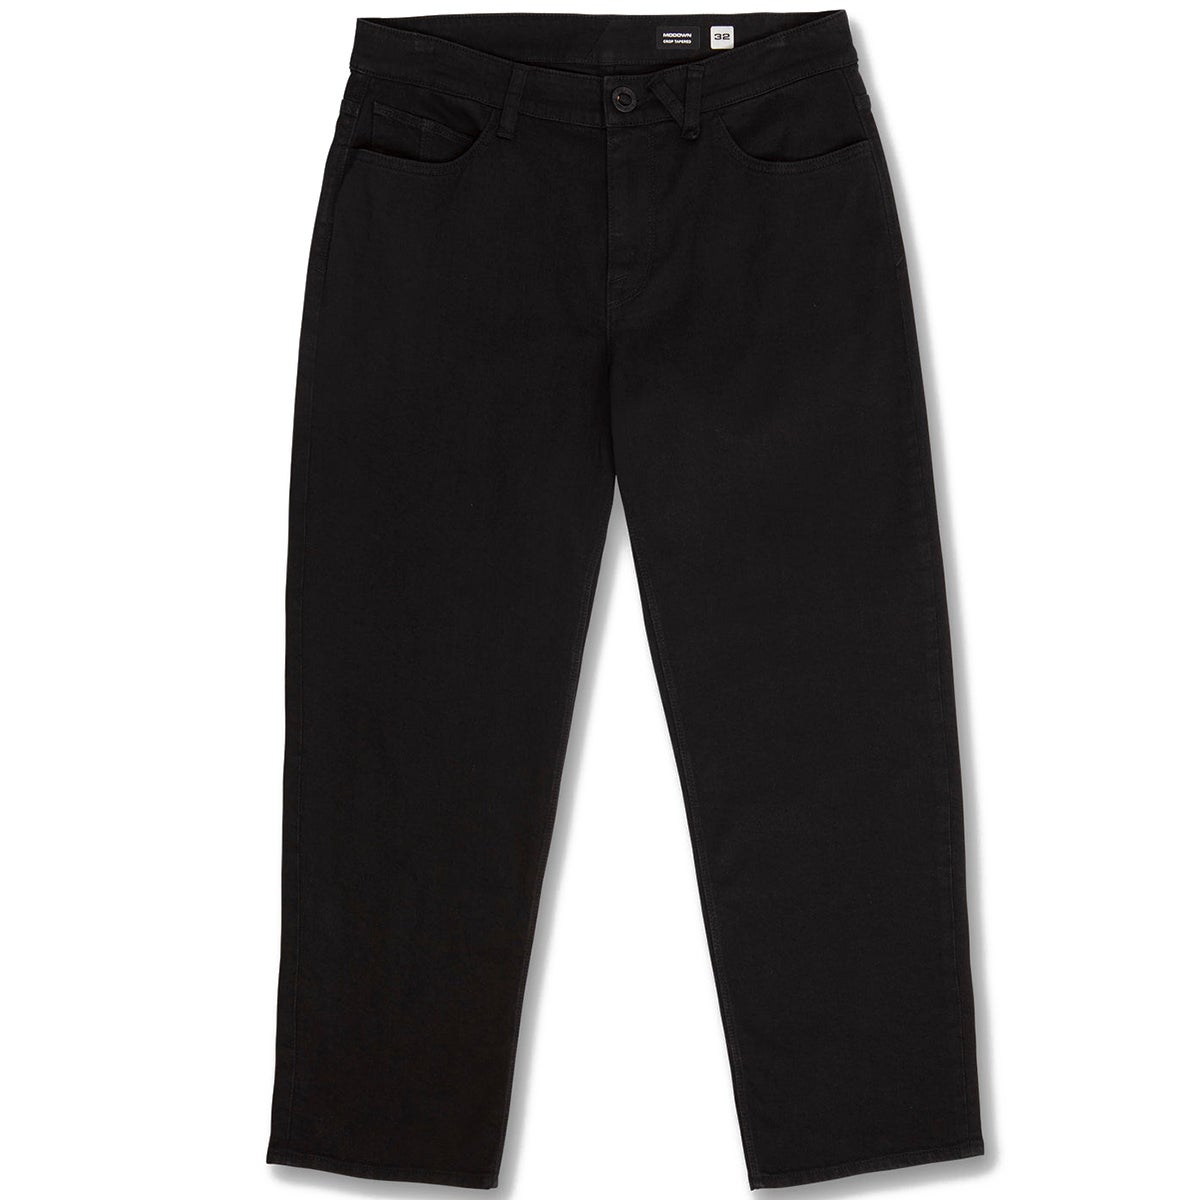 Volcom Modown Tapered Denim Jean in Black | Boardertown